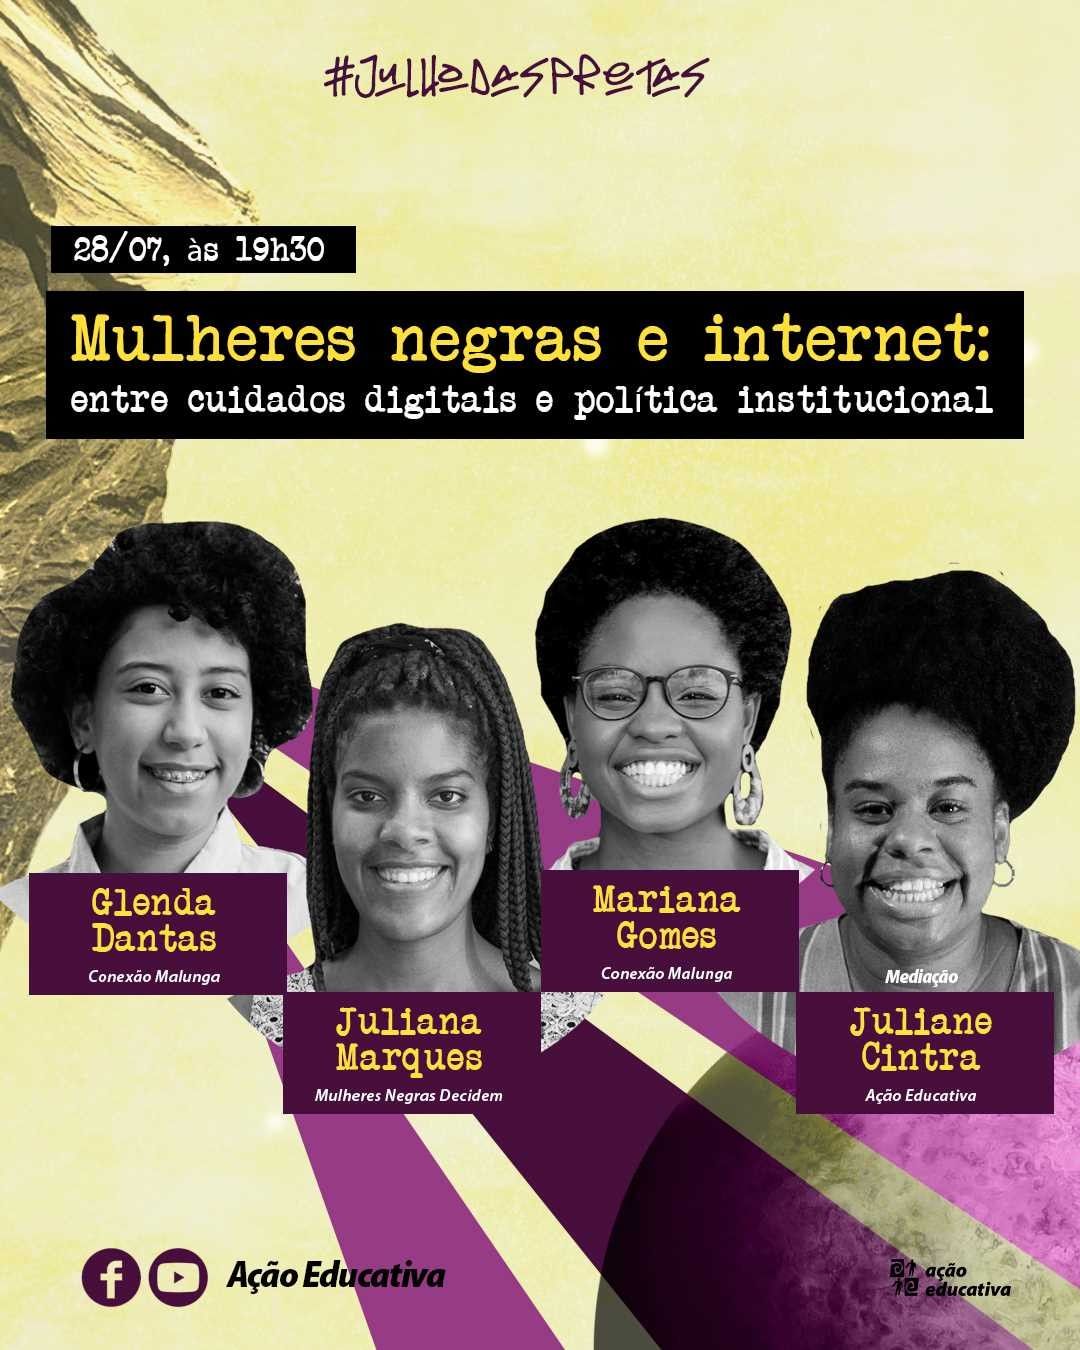 Conexão Malunga participa de painel sobre desafios e oportunidades às mulheres negras na Internet